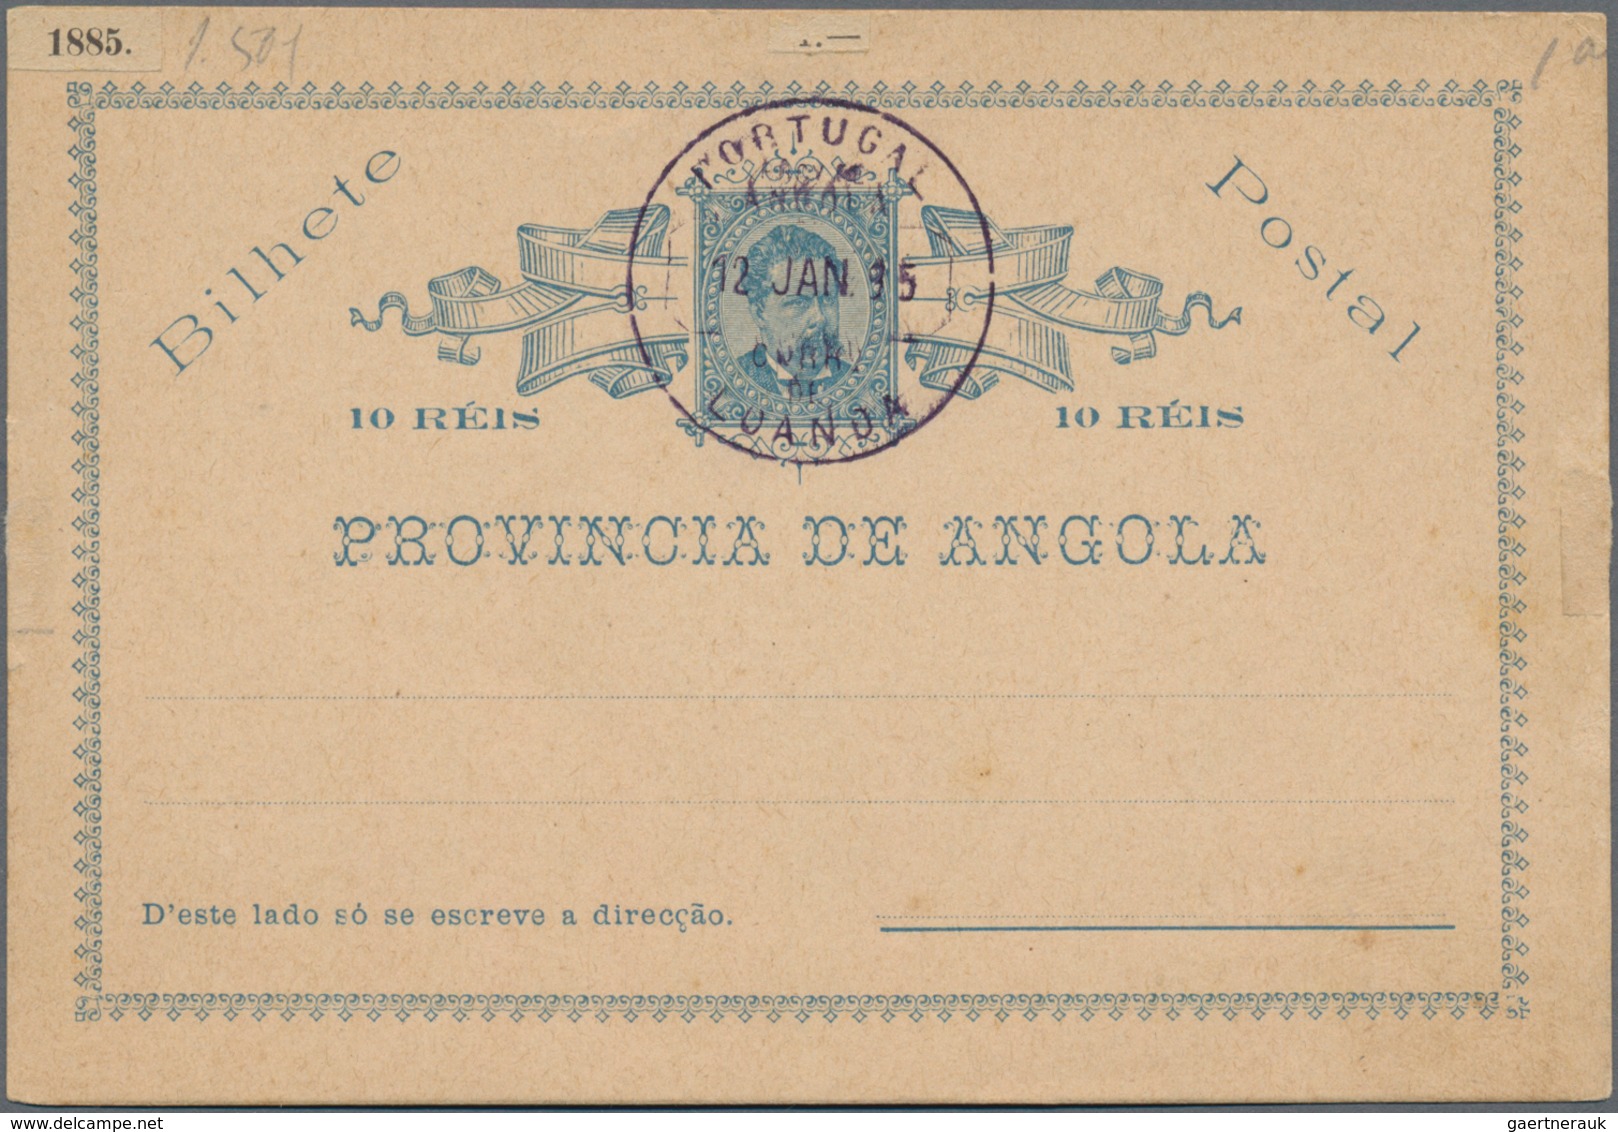 Alle Welt: 1870-1940, Europa & Übersee Briefebestand mit viel Portugal & Kolonien, Azoren etc., Rumä